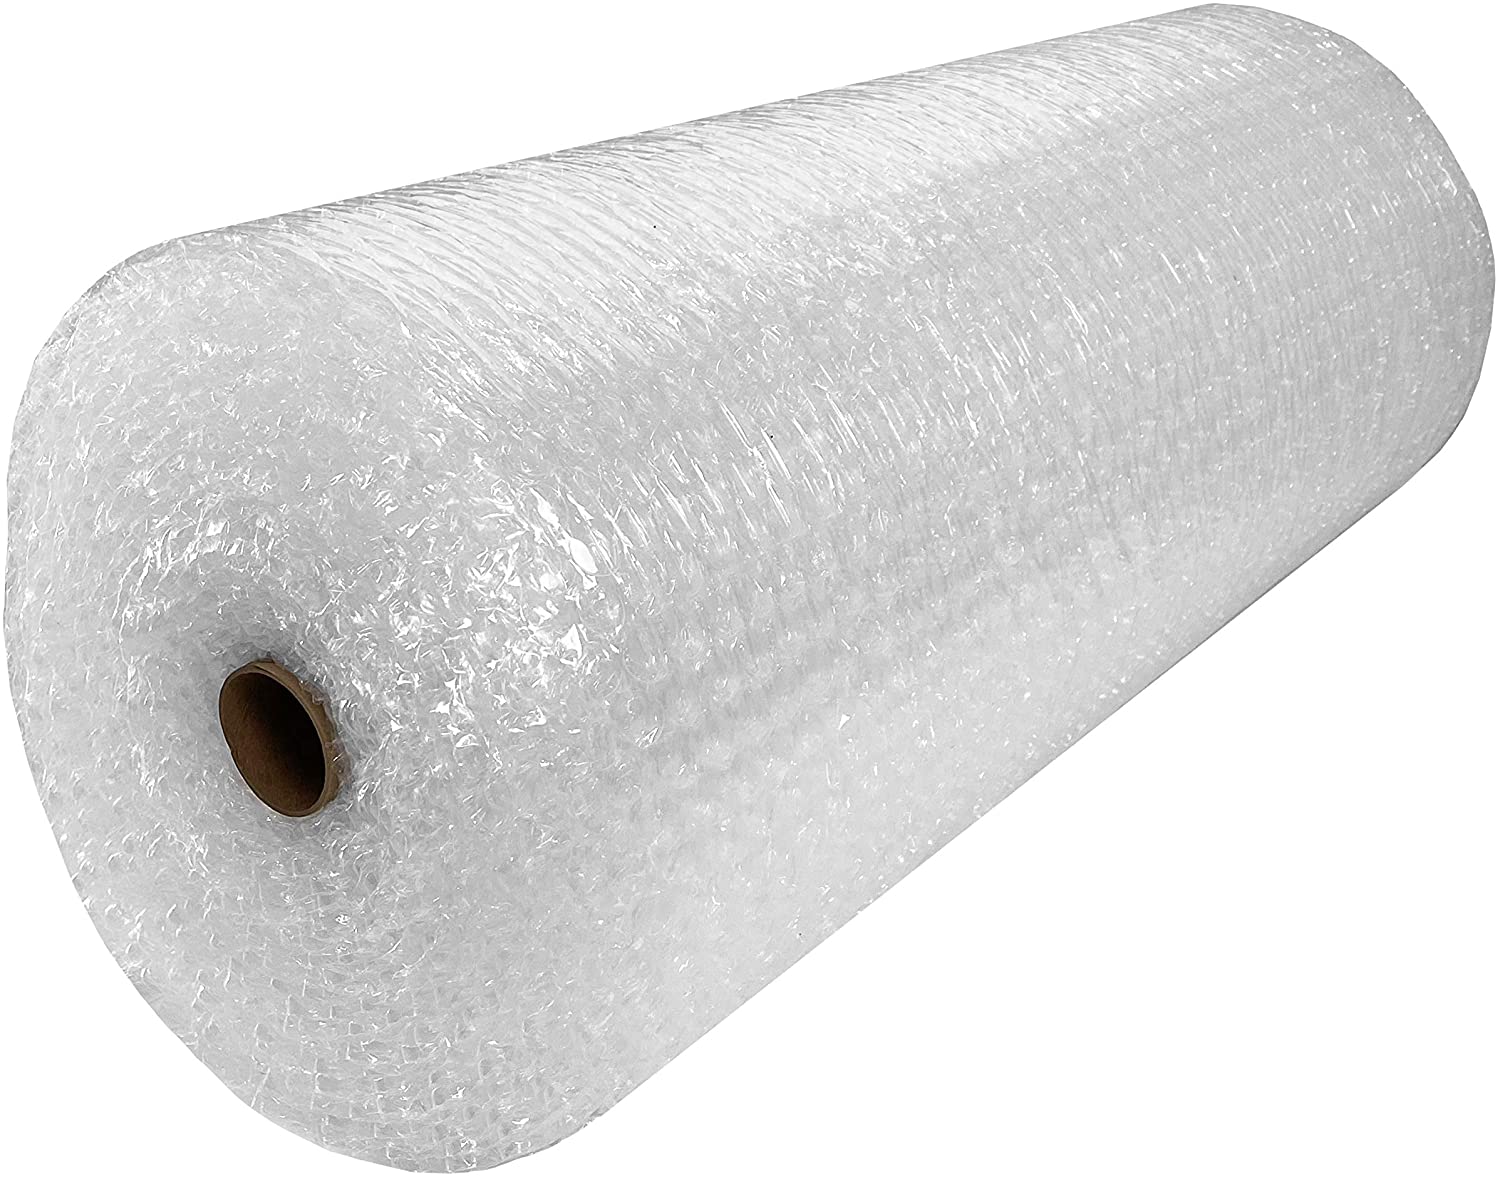 Paper Bubble Wrap Rolls